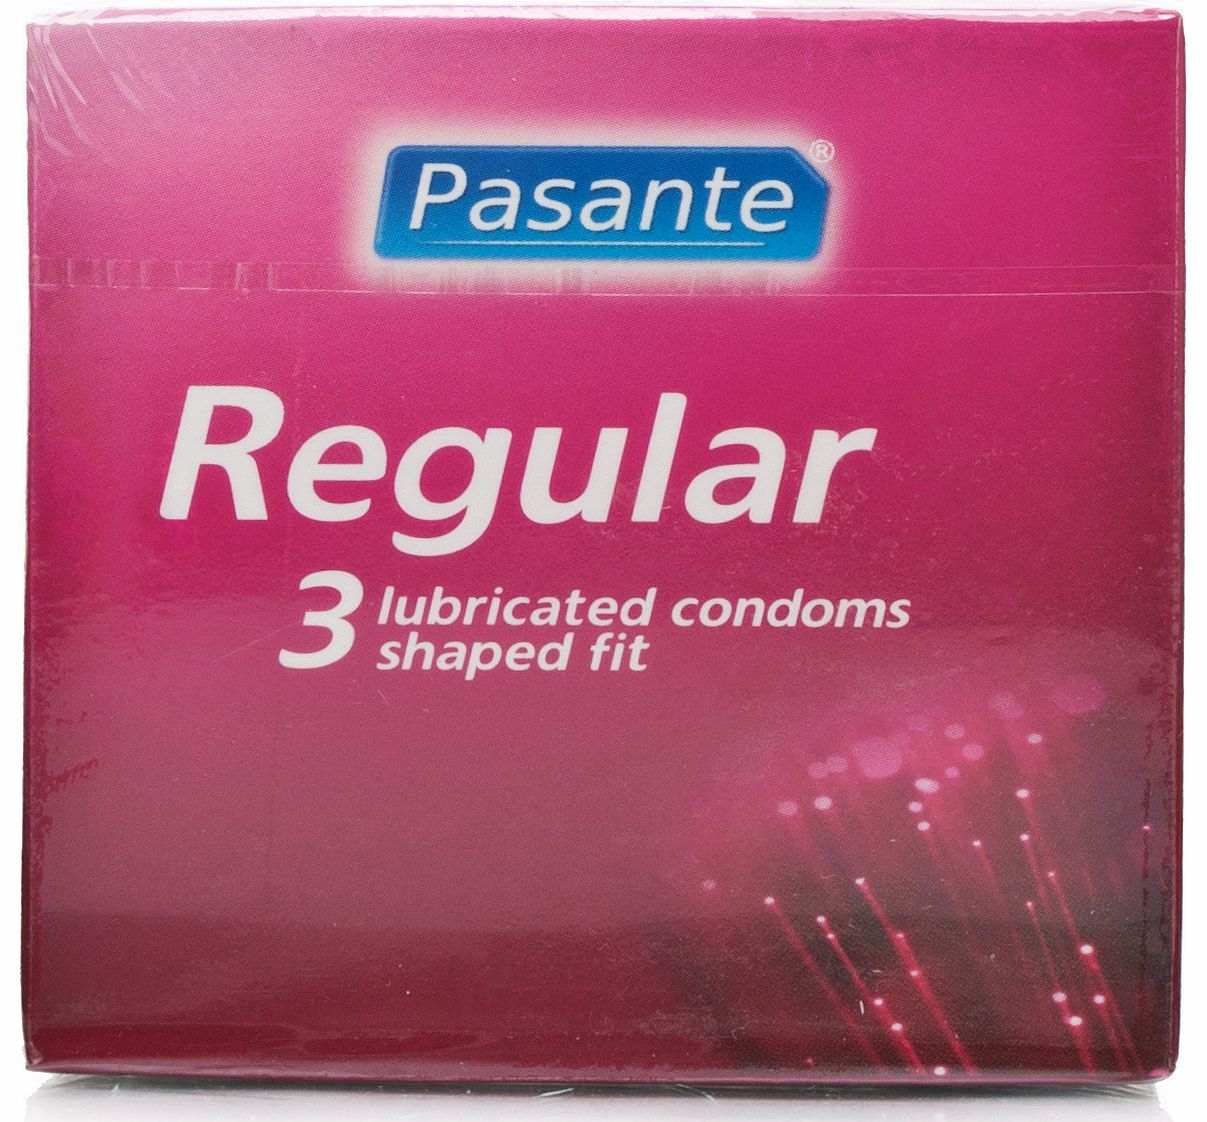 Regular Condoms